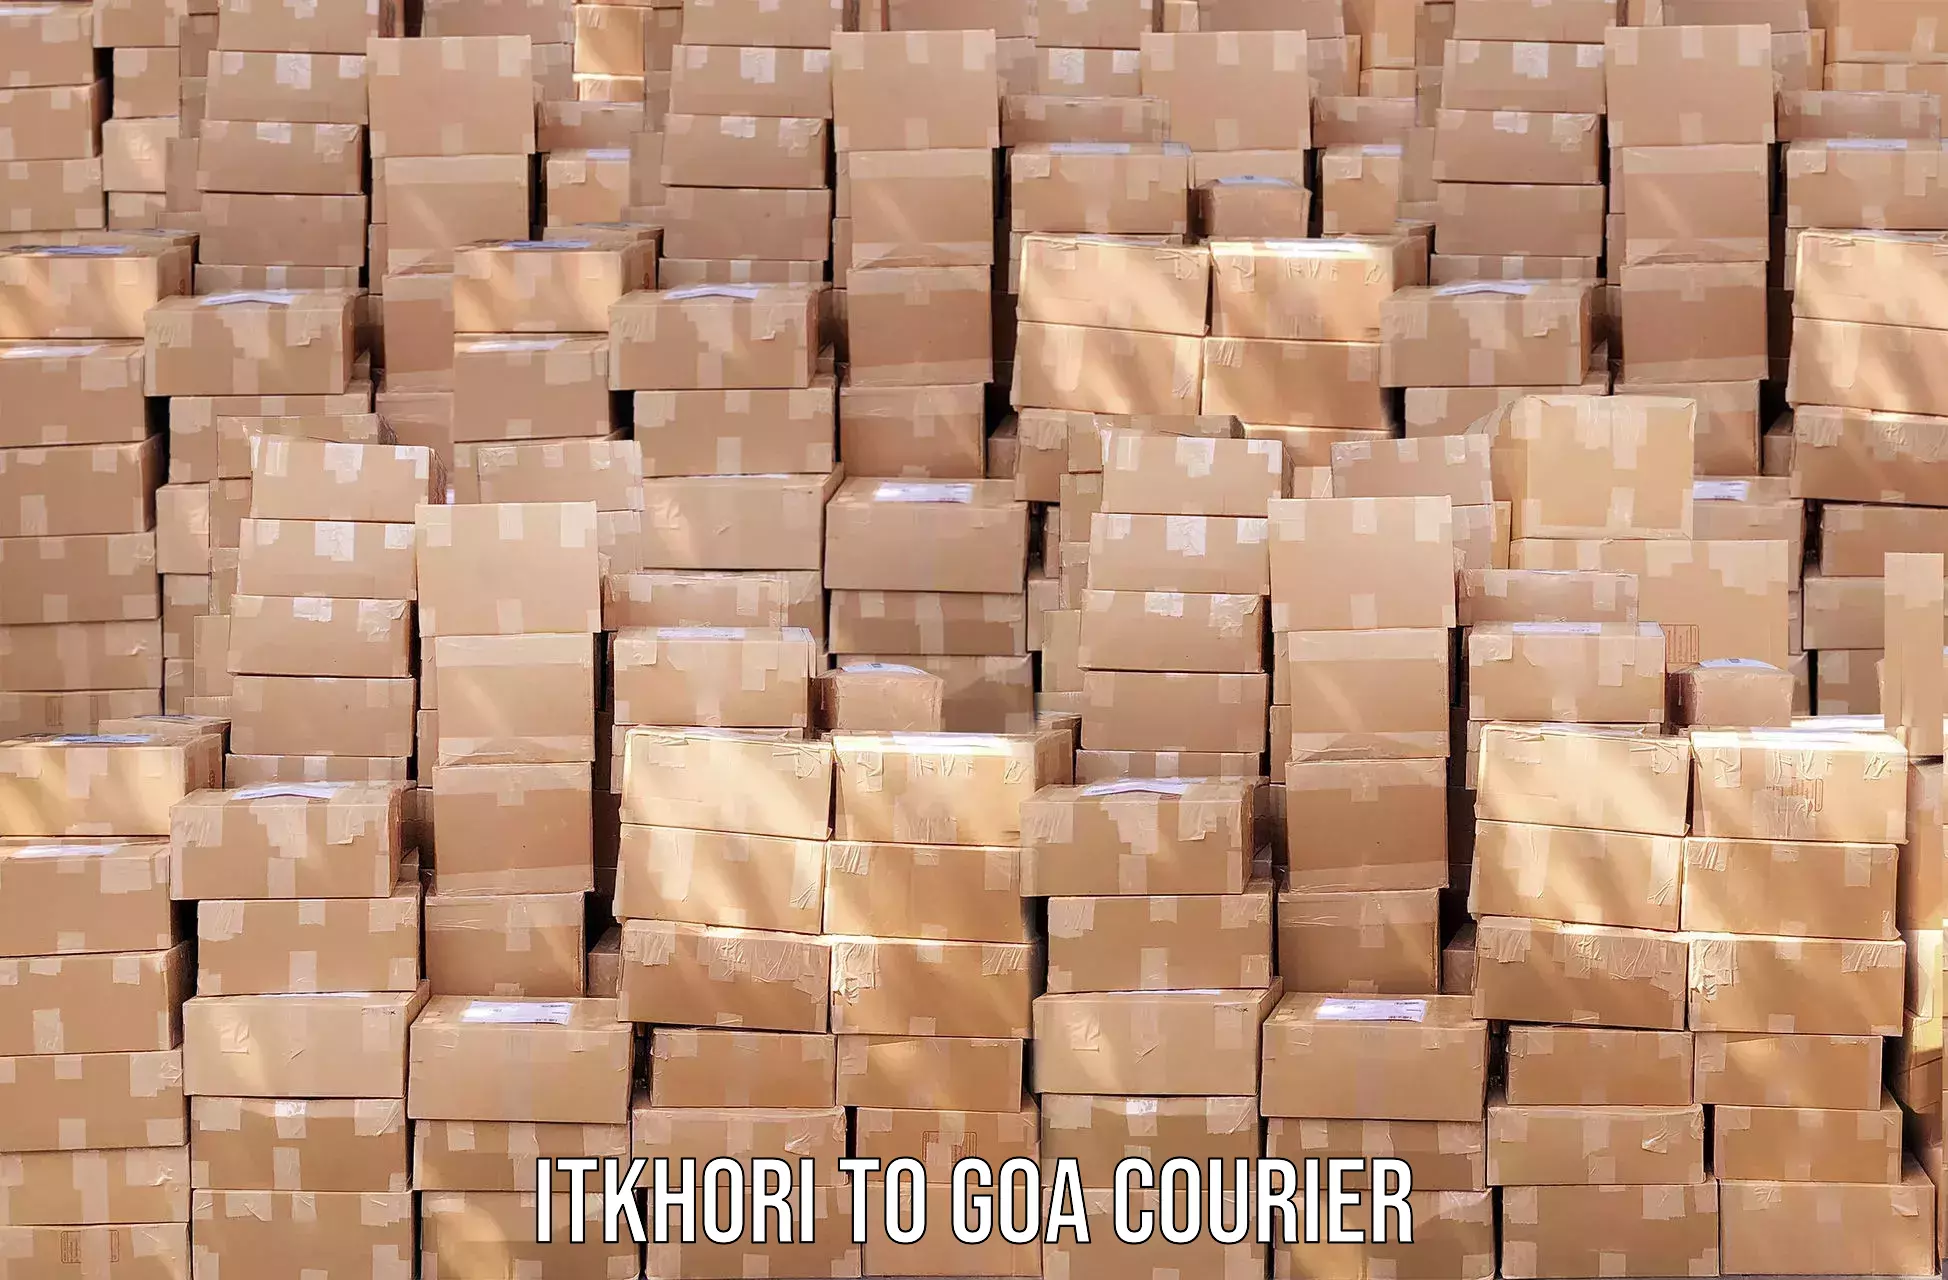 User-friendly courier app Itkhori to Vasco da Gama